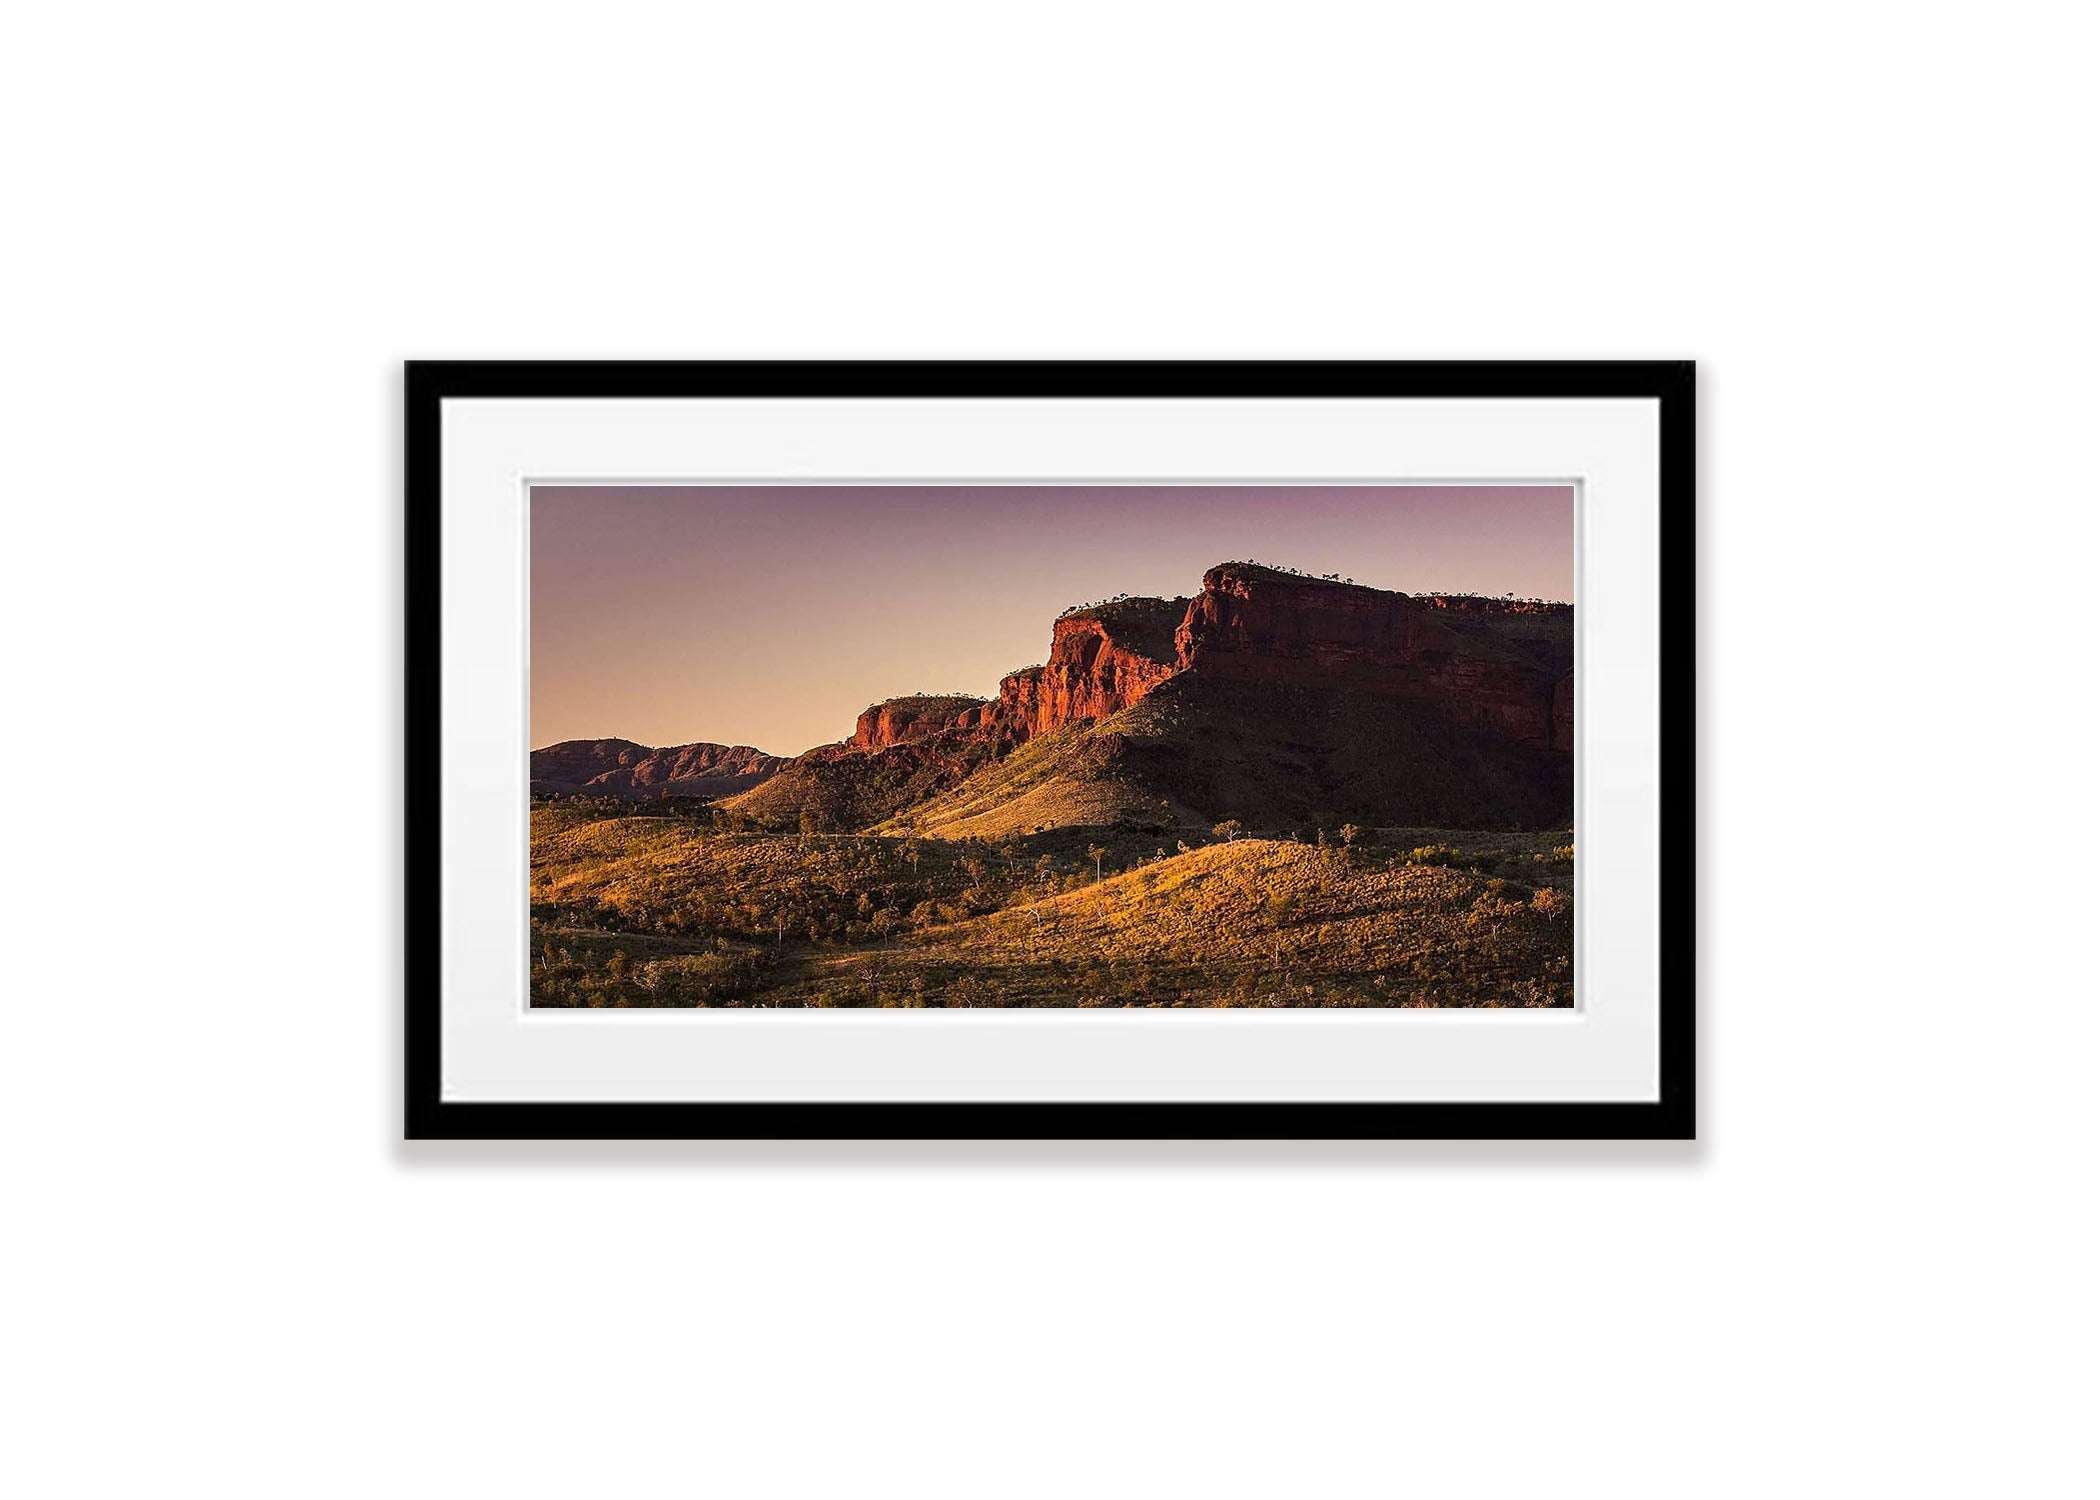 Kimberley Range, The Kimberley, Western Australia